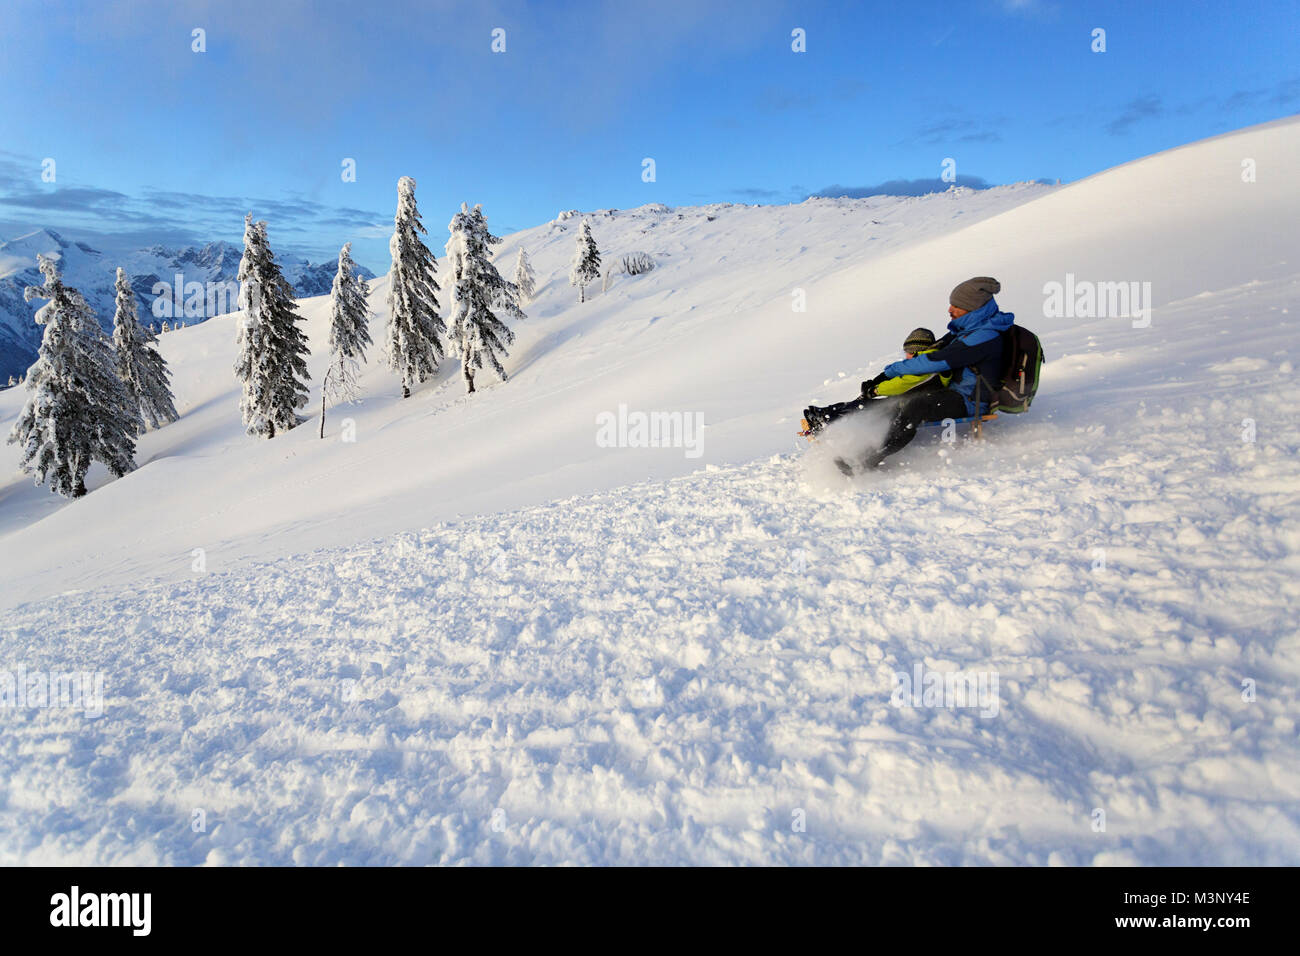 Père et fils la luge de montagne couverte de neige avec une vue imprenable, un hiver hiver wanderland, jouissance, Velika planina, la Slovénie. Banque D'Images